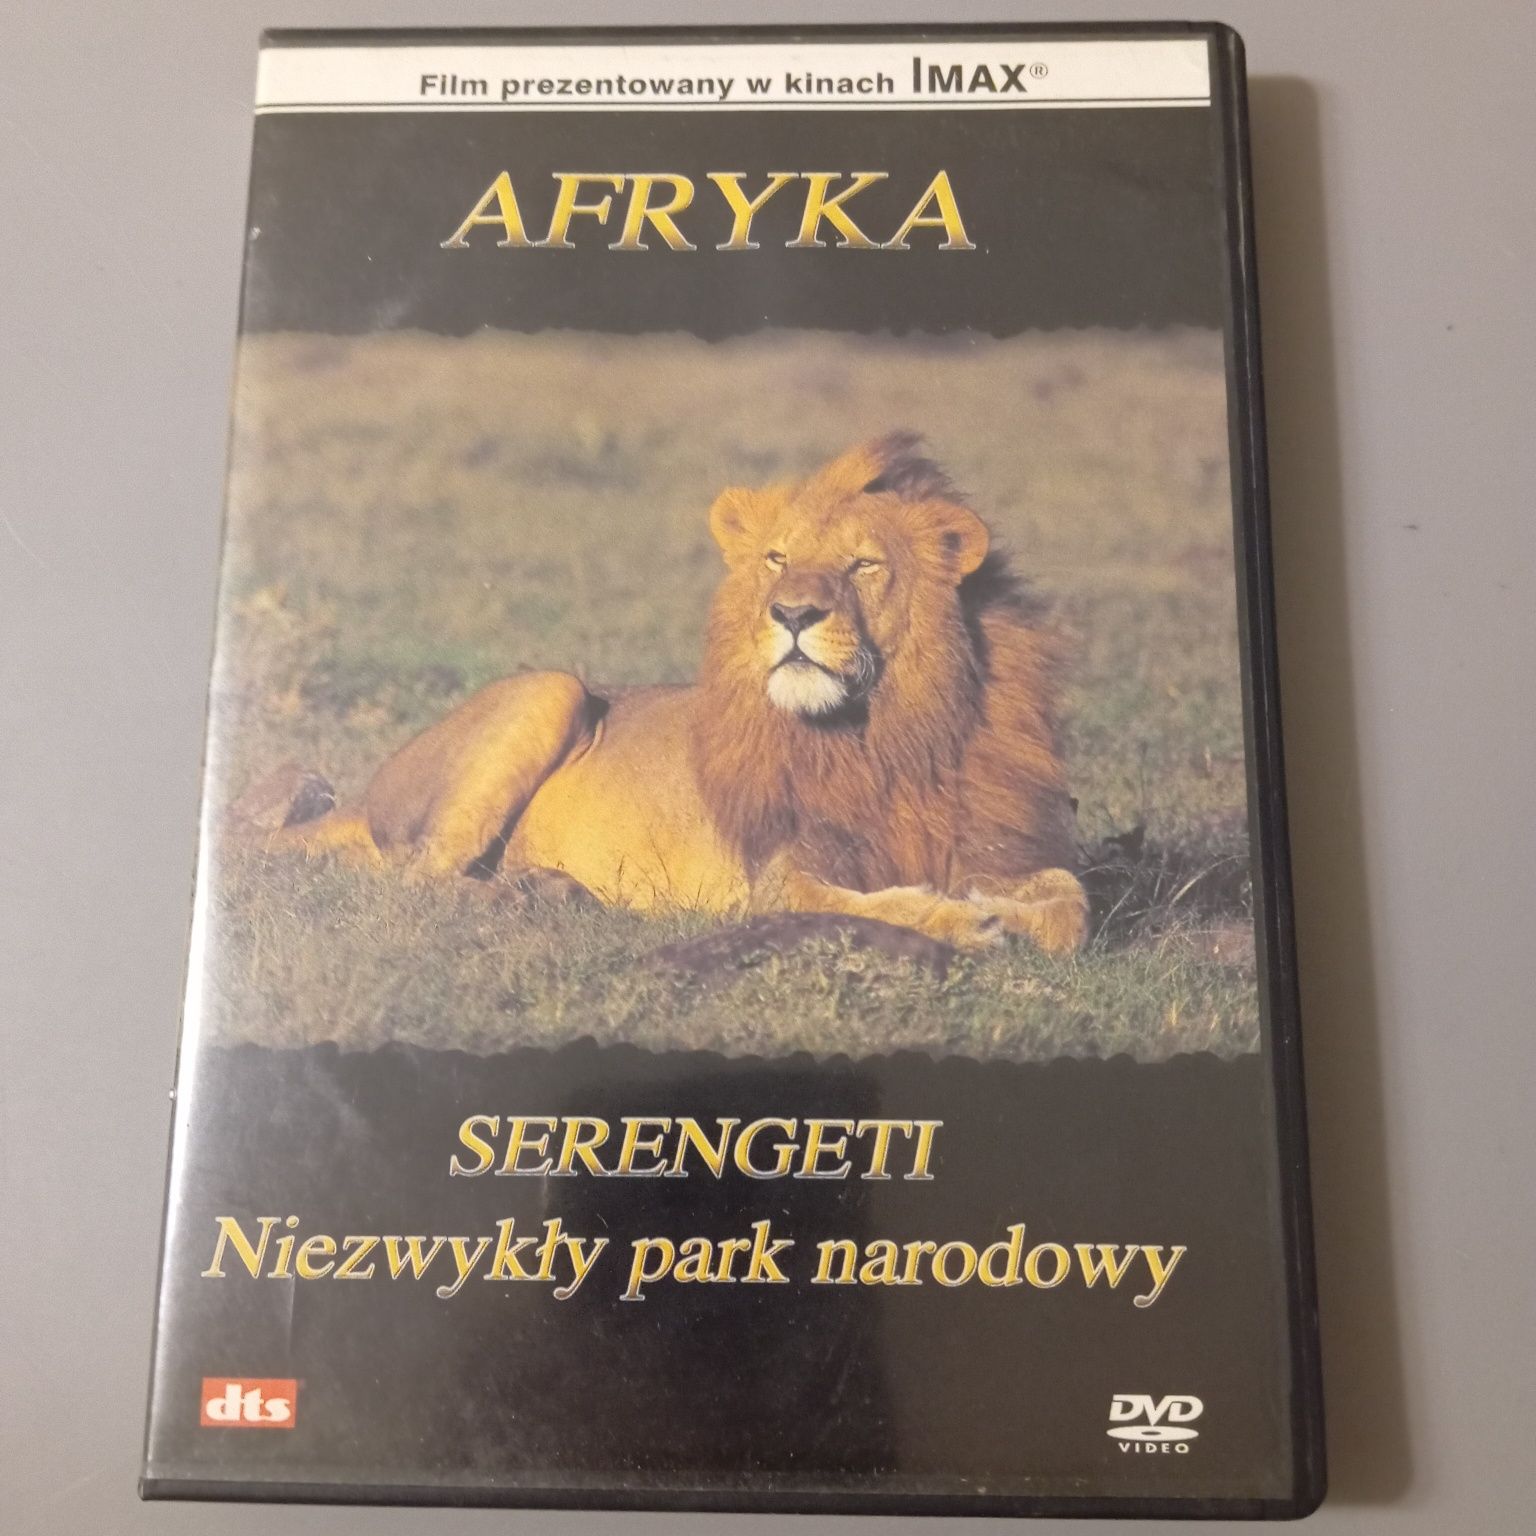 Afryka Serengeti, Niezwykły park krajobrazowy, film DVD, stan bdb